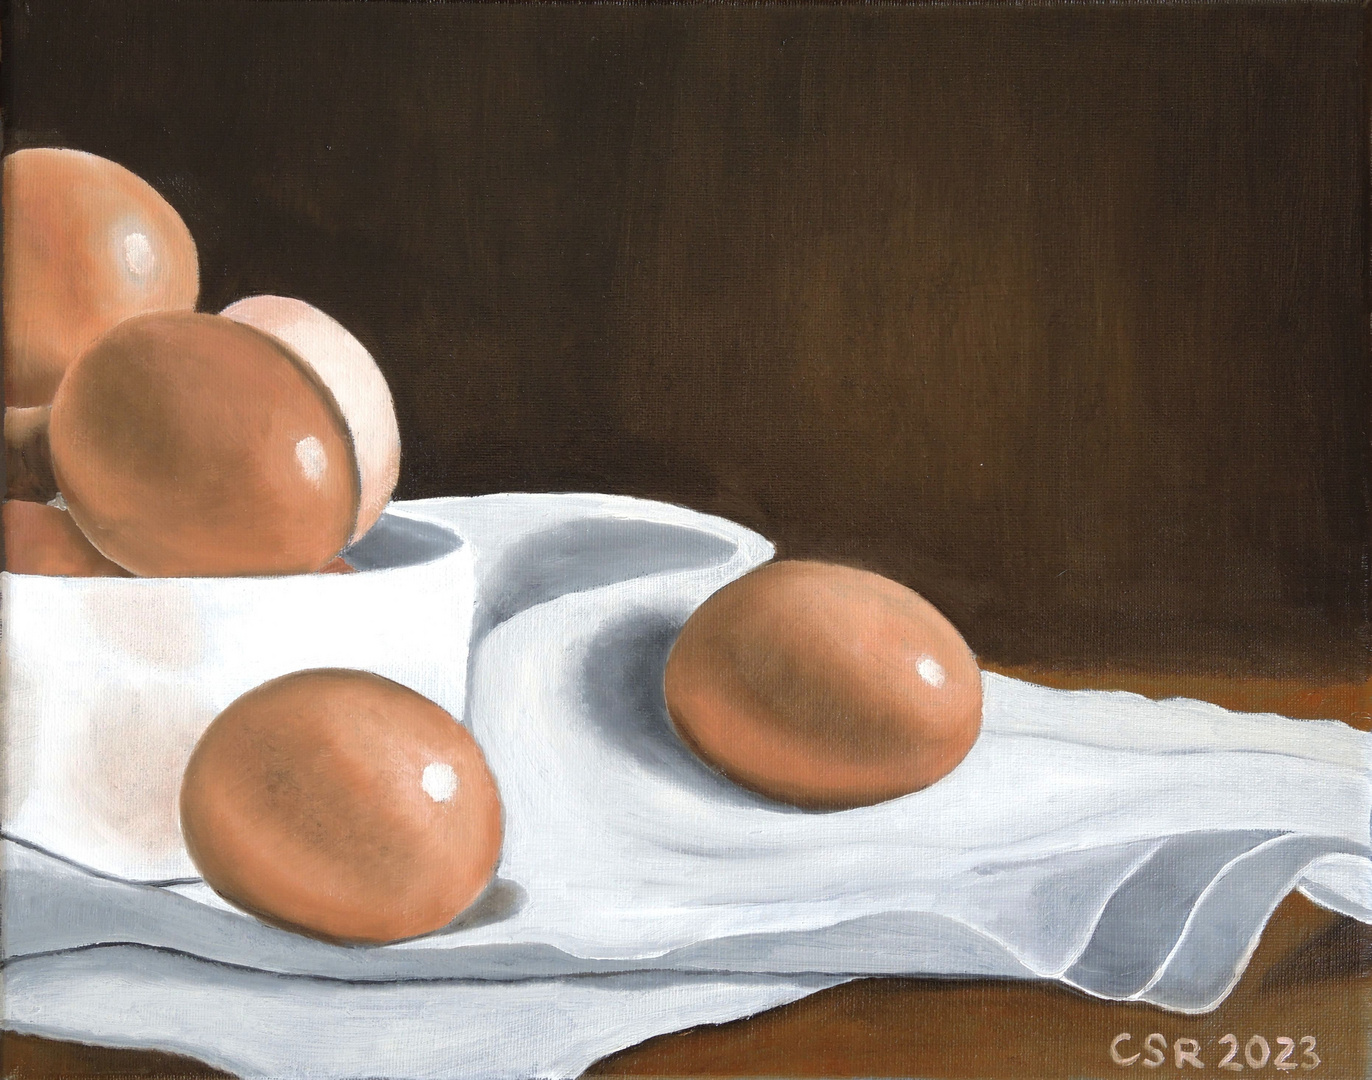 Sieben gekochte Eier - Stillleben in Öl gemalt